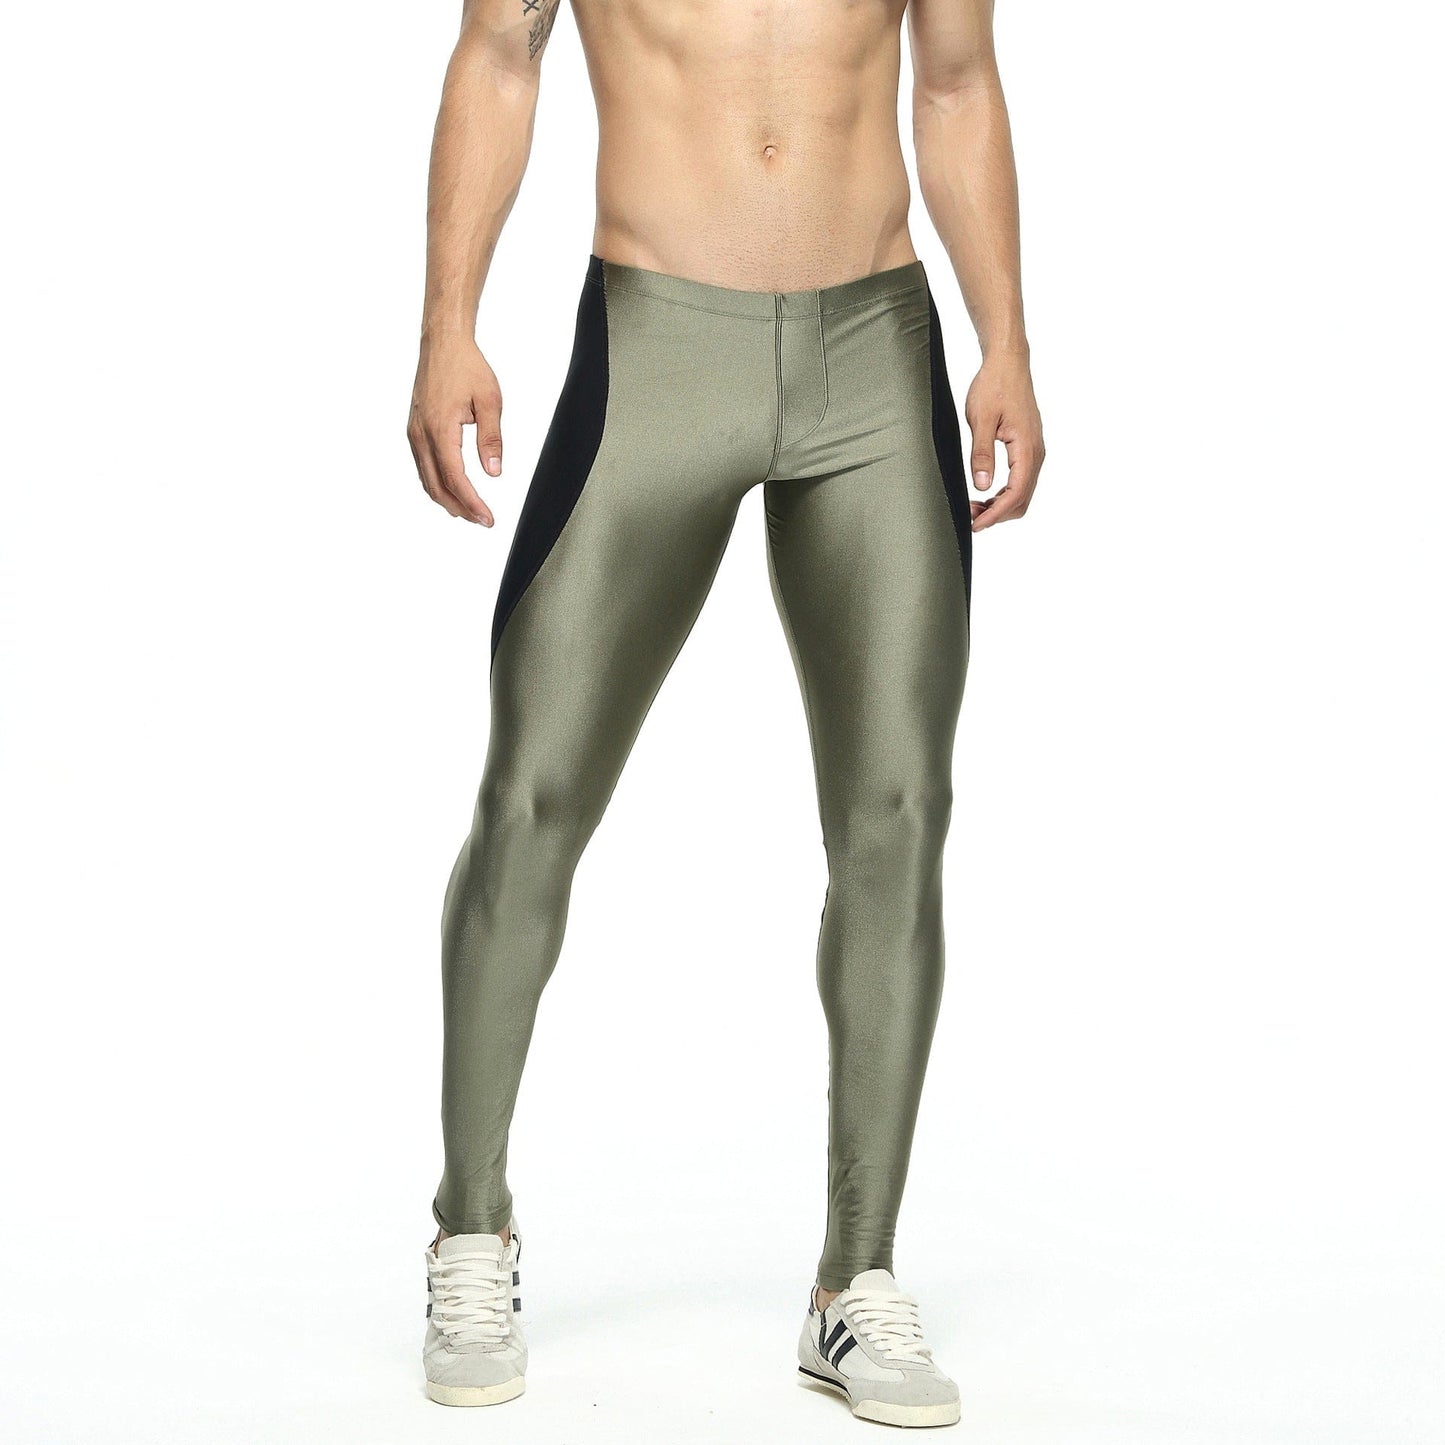 ALLRJ Men's leggings Army Green / L Nylon Men's Gym Pants Ninth